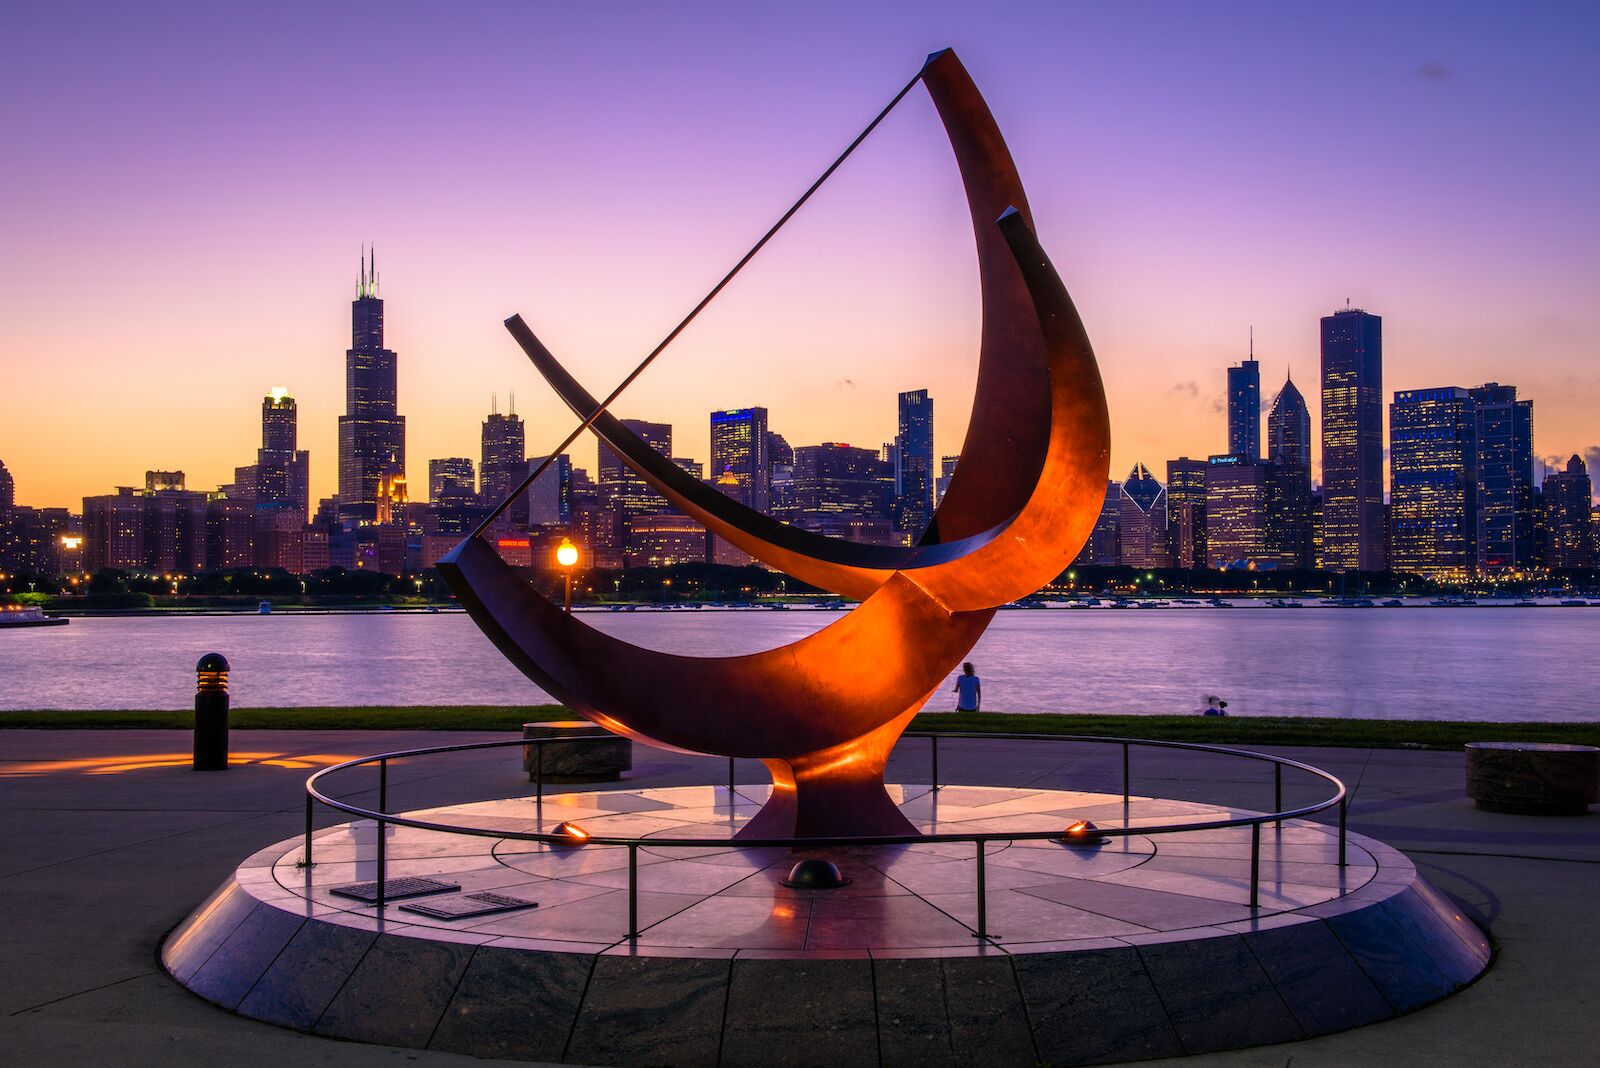 adler-planetarium-chicago-sunset